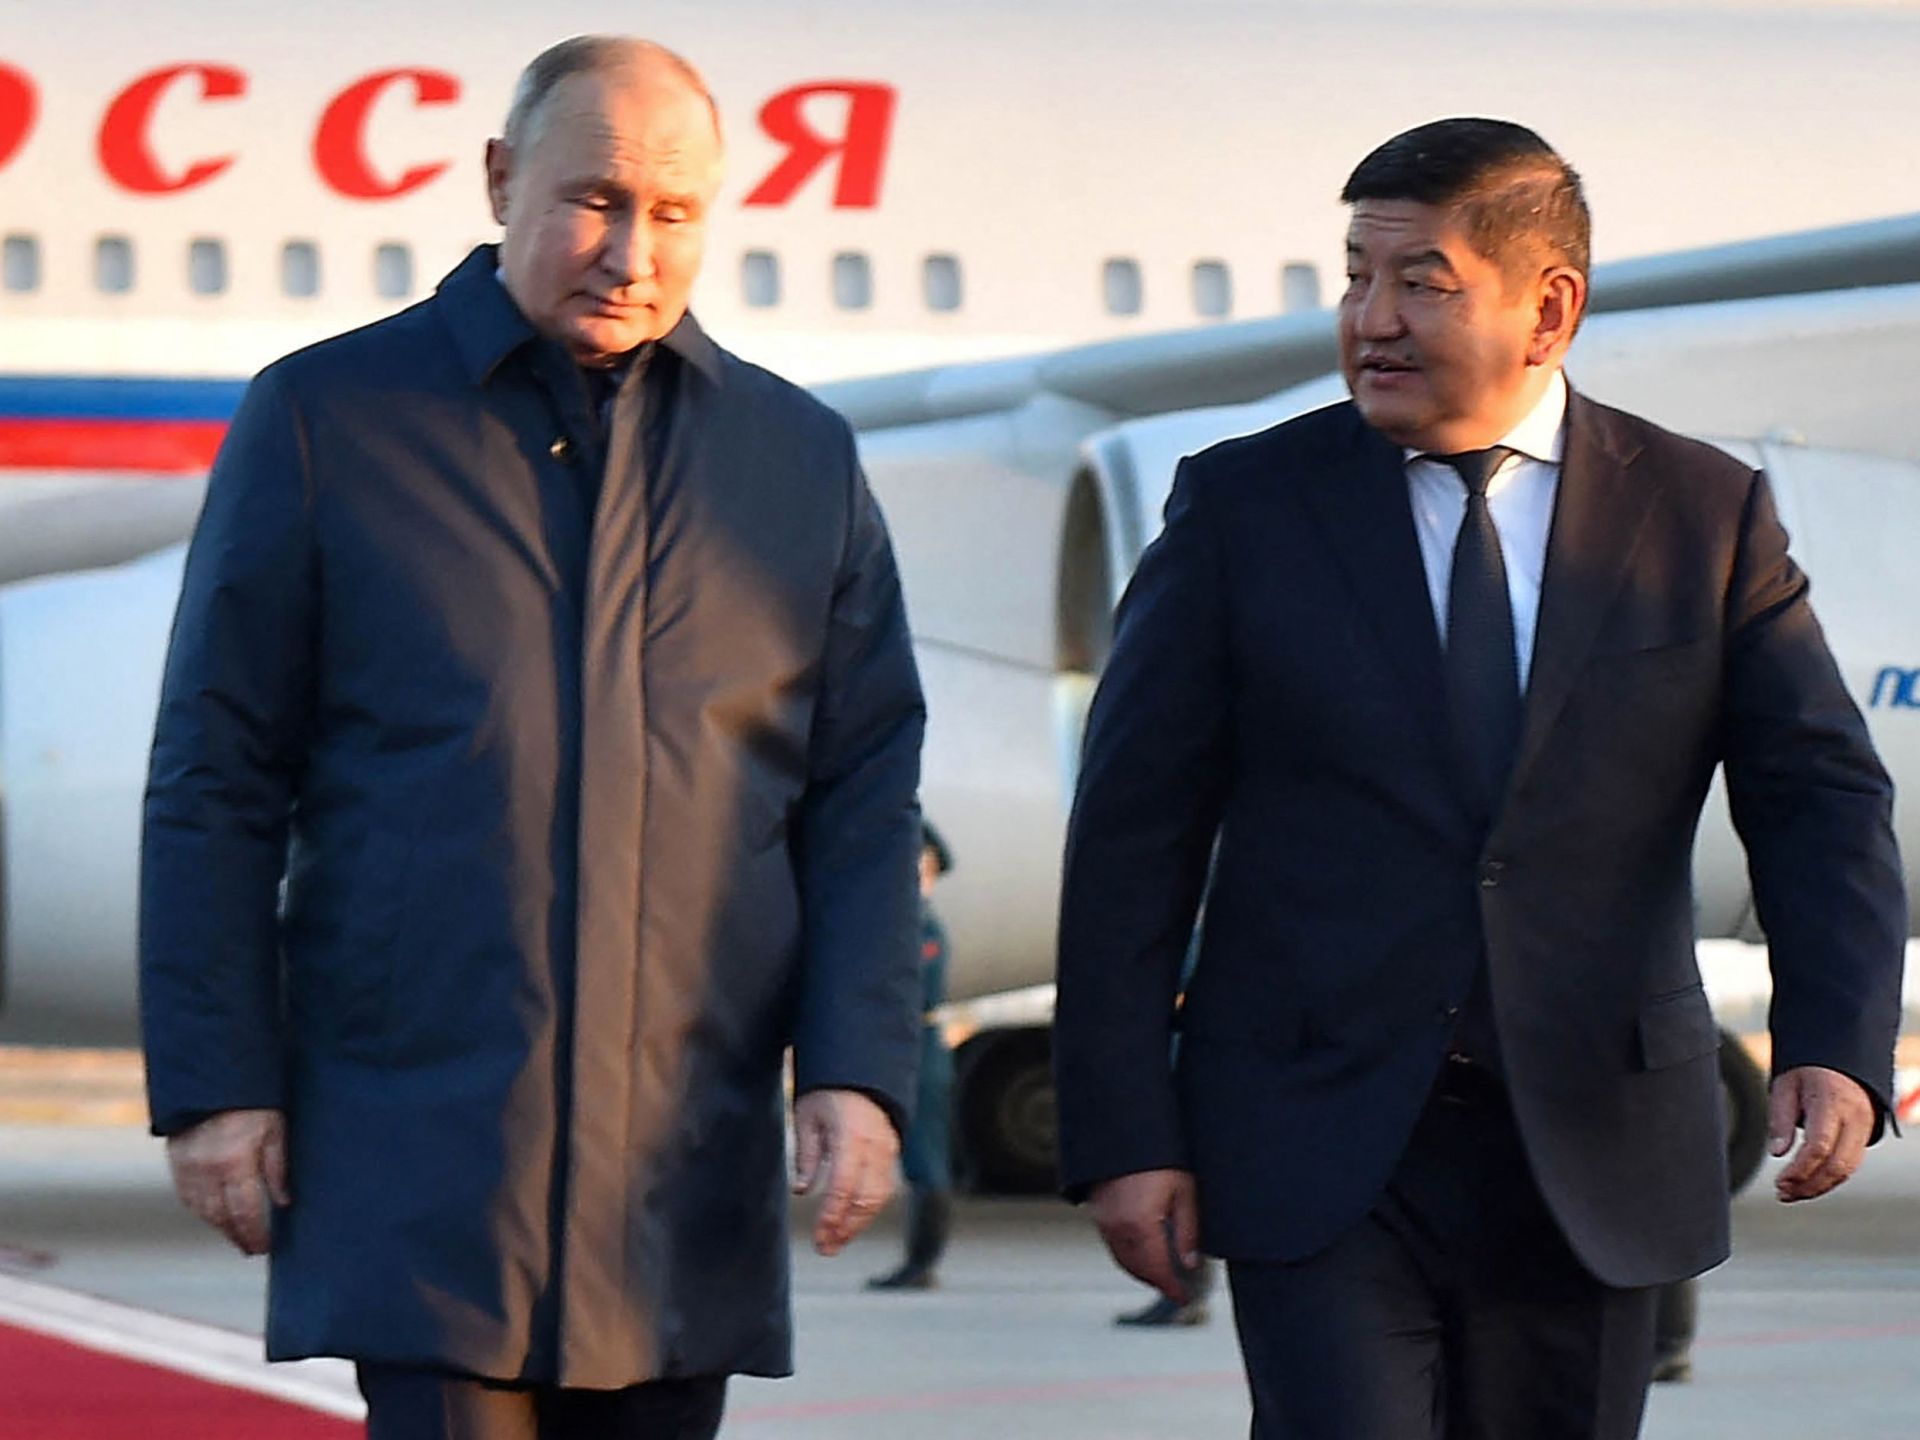 بوتين بقرغيزستان في أول رحلة بعد مذكرة توقيفه | أخبار – البوكس نيوز